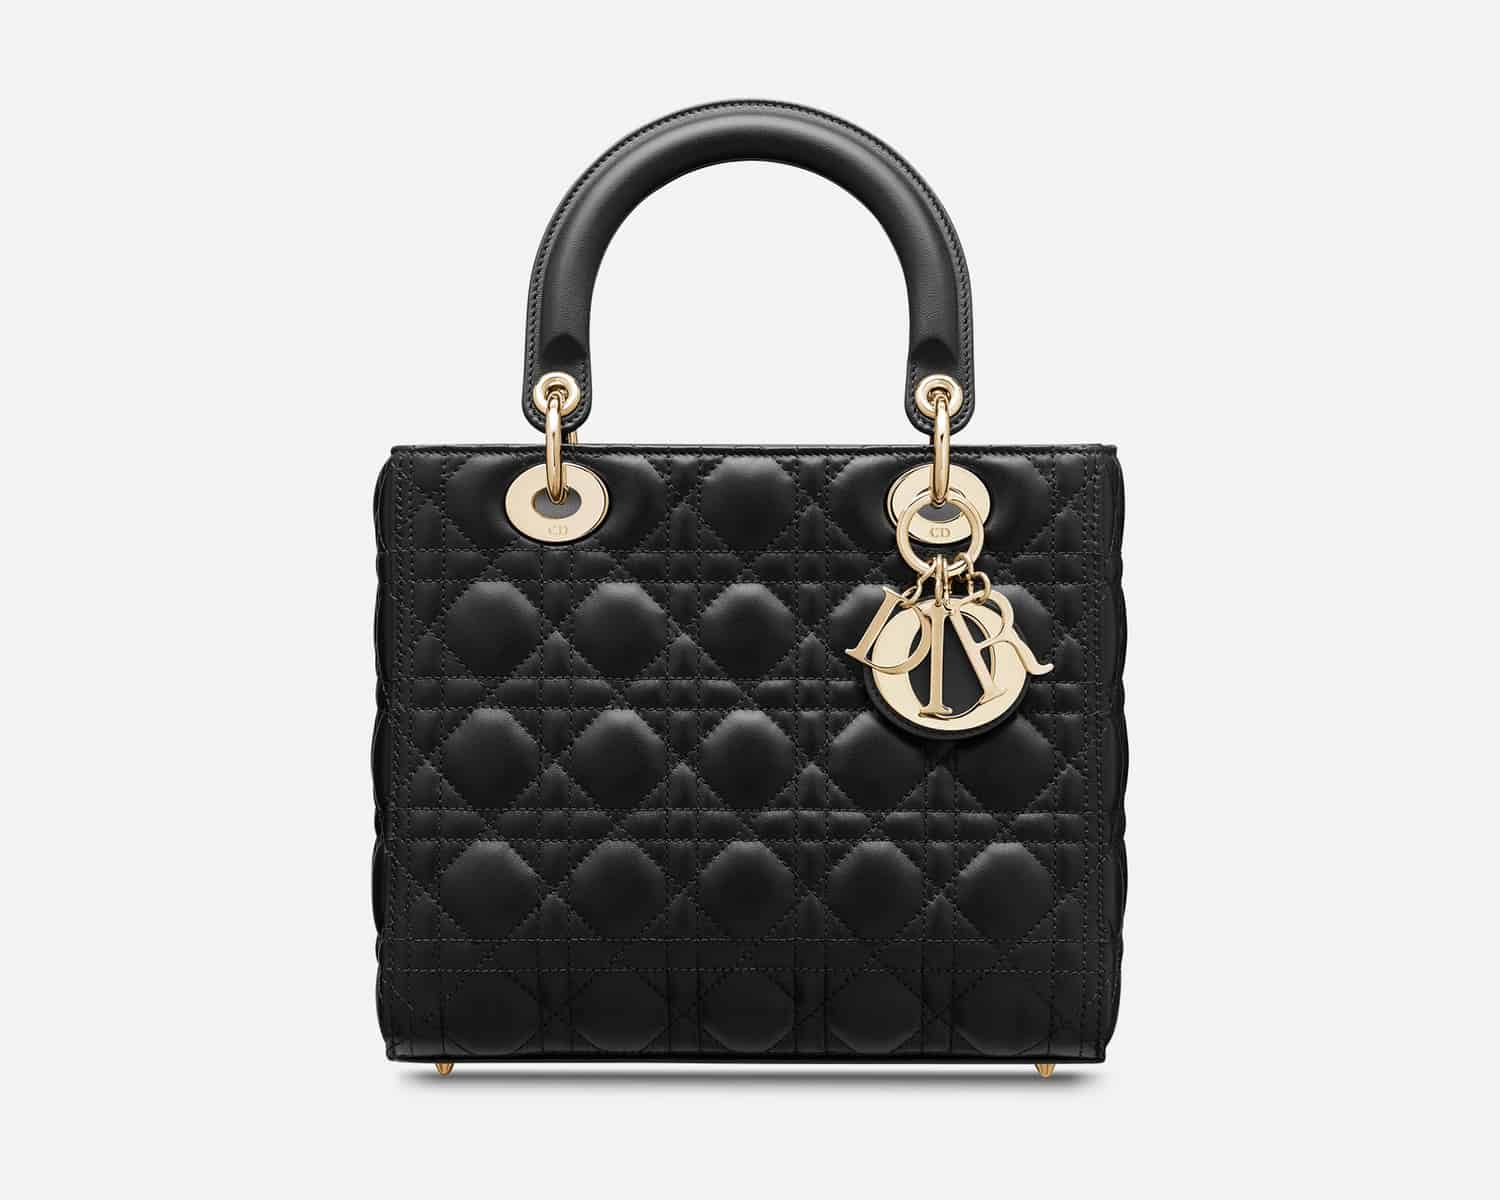 Christian Dior Lady Dior Bag